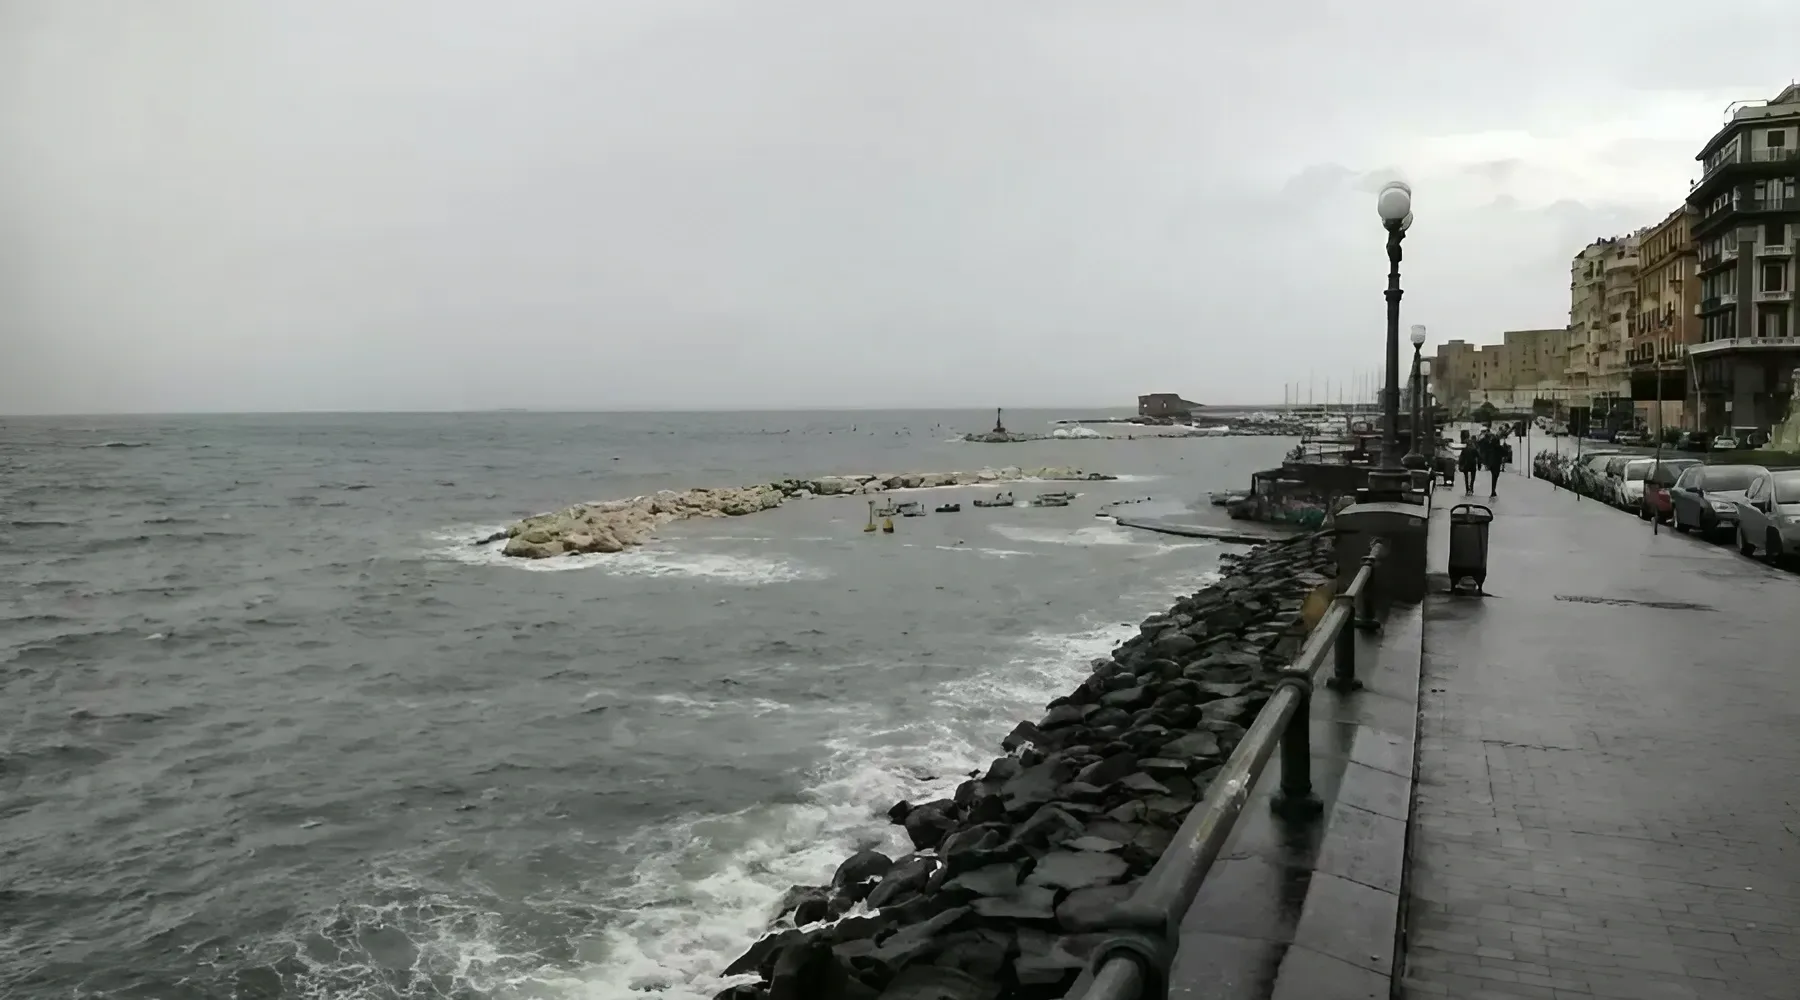 Fotos von schlechtem Wetter in Neapel